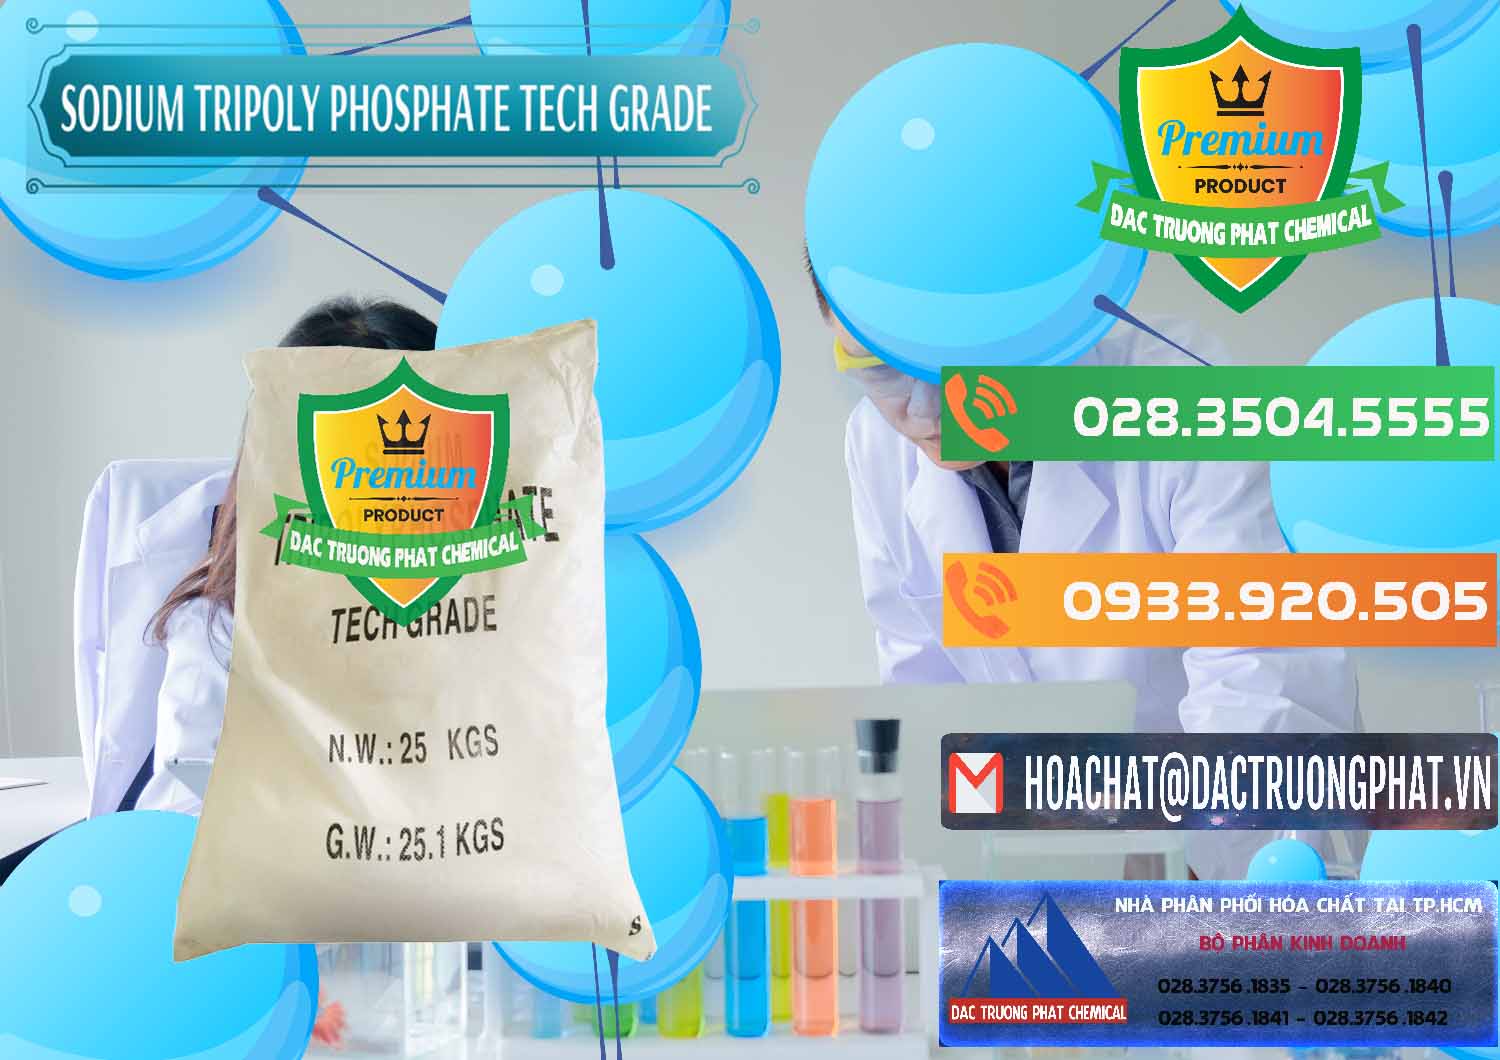 Cty chuyên cung cấp _ bán Sodium Tripoly Phosphate - STPP Tech Grade Trung Quốc China - 0453 - Nhà cung cấp _ bán hóa chất tại TP.HCM - hoachatxulynuoc.com.vn